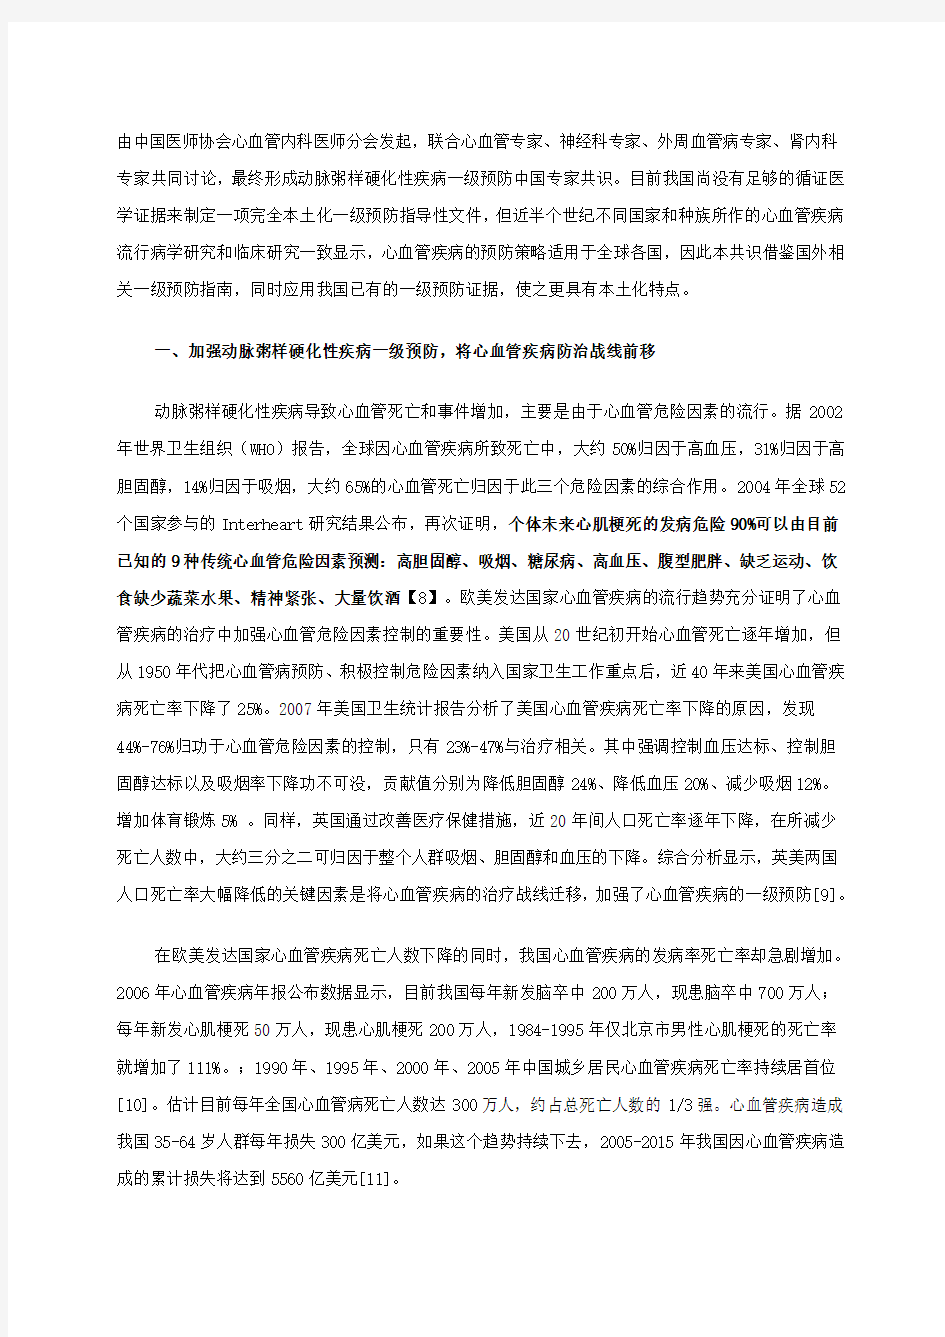 动脉粥样硬化性疾病一级预防中国专家共识(2009版)